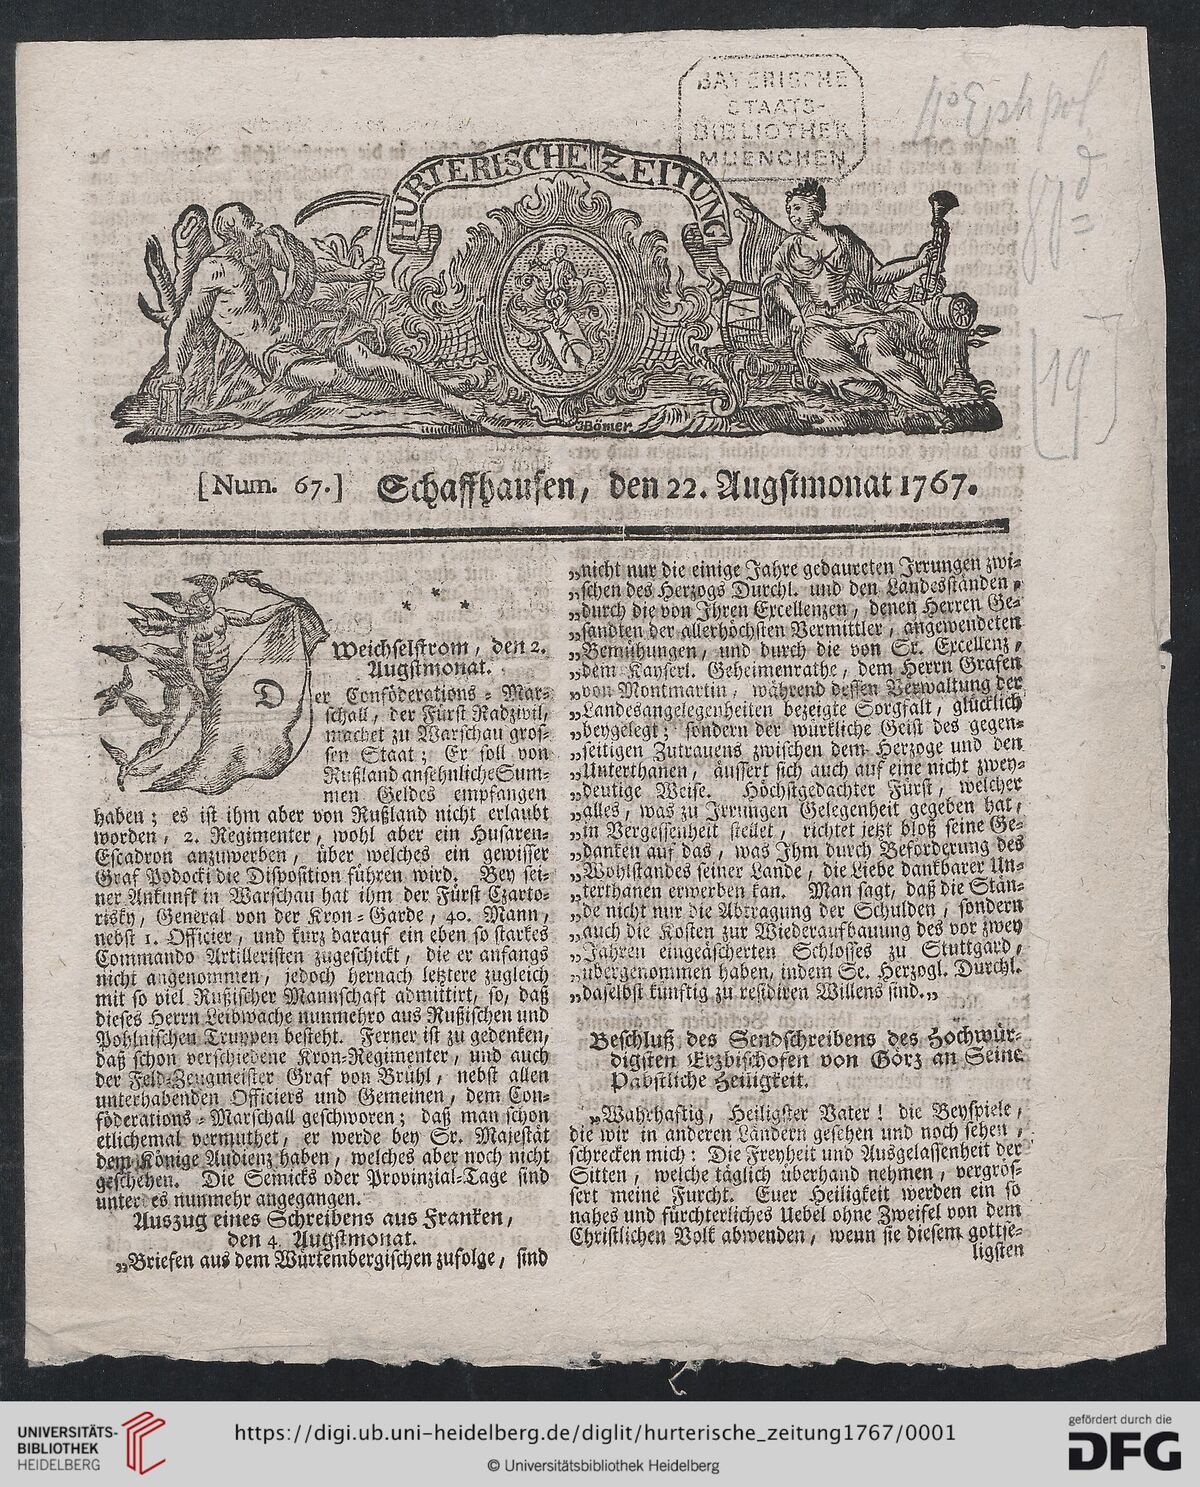 GFD 3/302: Frontseite der «Hurterischen Zeitung», später «Allgemeiner Schweizerischer Korrespondent», vom 22. August 1767